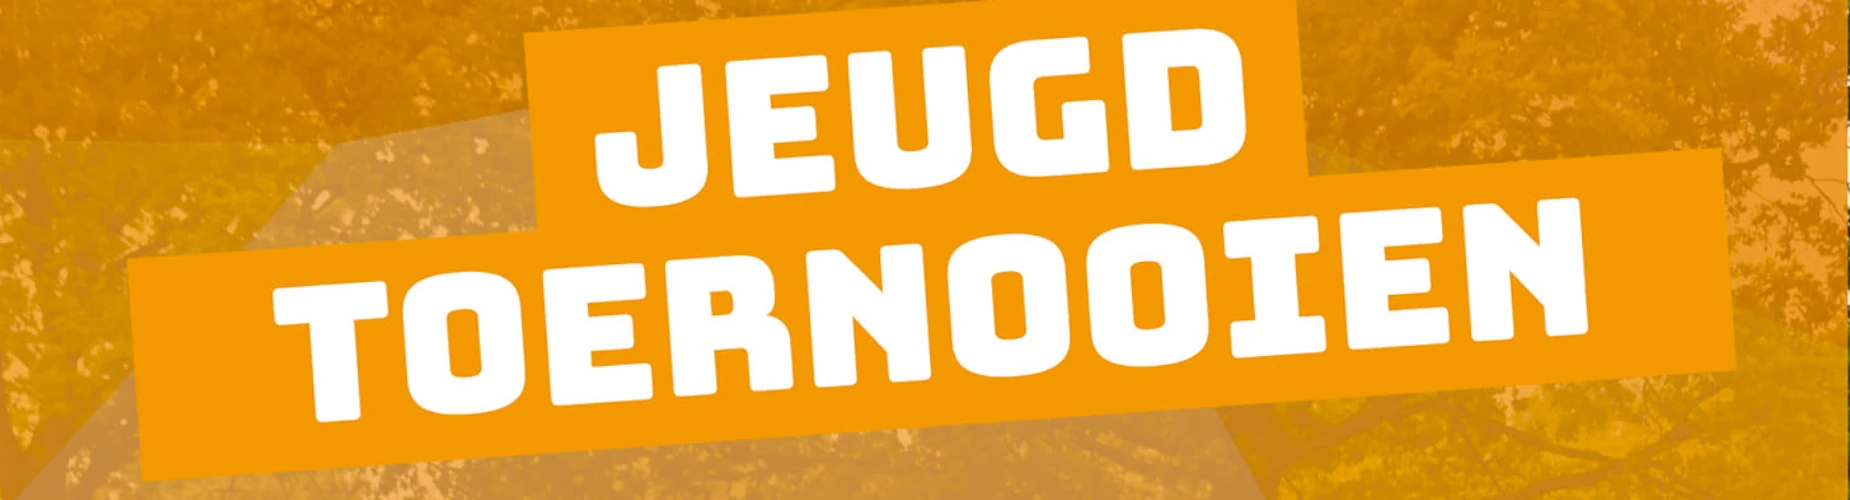 Banner - MO11 - VOW Jeugdtoernooi - VOW - Veghel